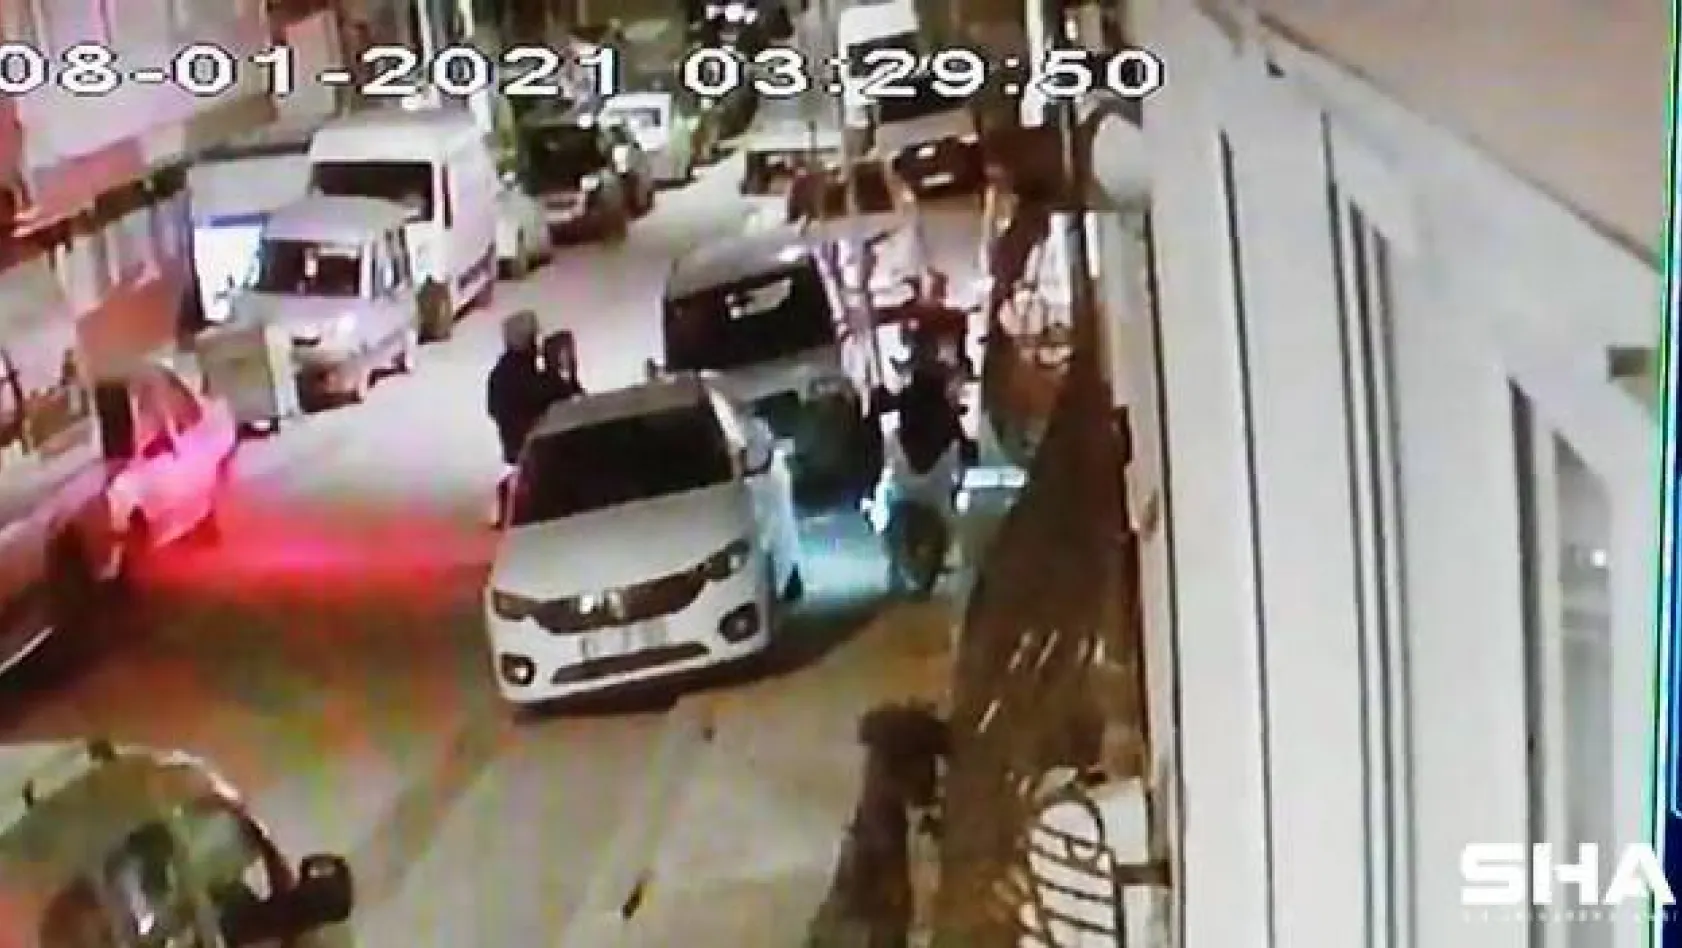 (Özel) Maltepe'de dakikalar içerisinde motosiklet hırsızlığı